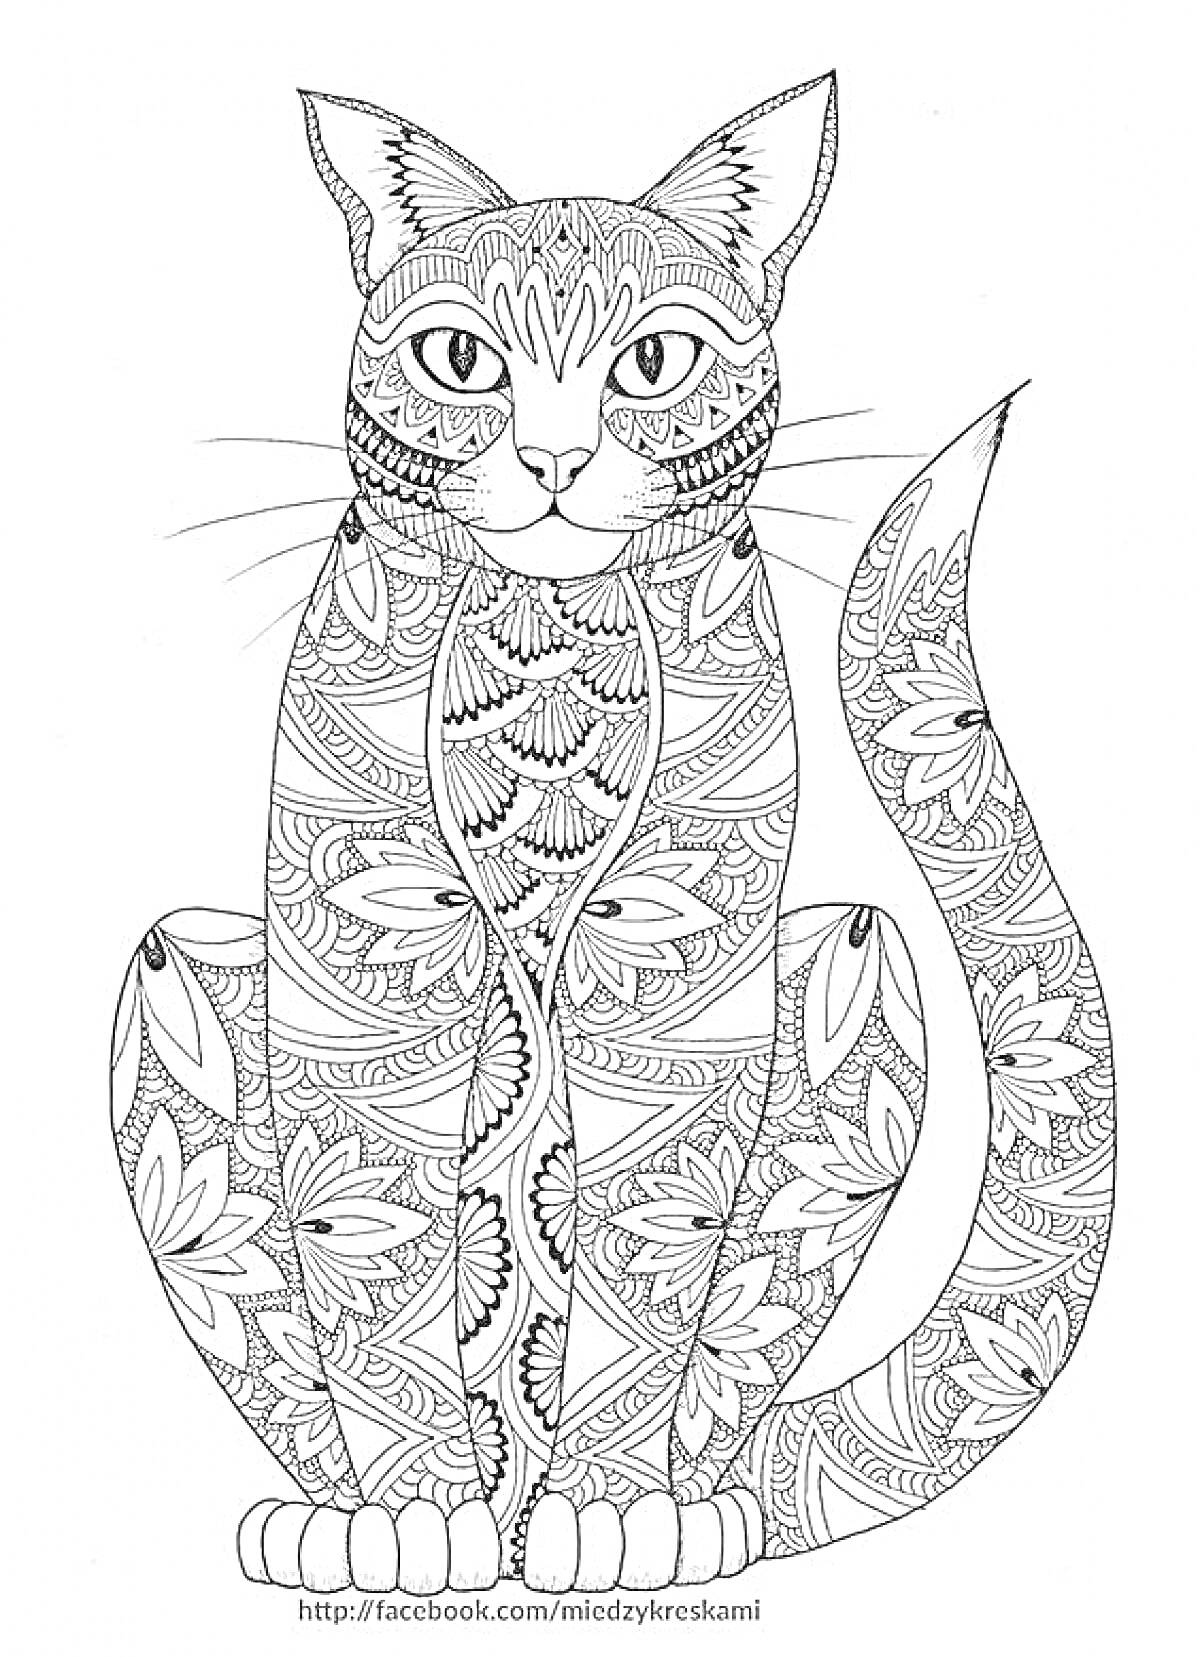 Раскраска Кот с узорчатым телом, различные цветочные и абстрактные узоры на всем теле